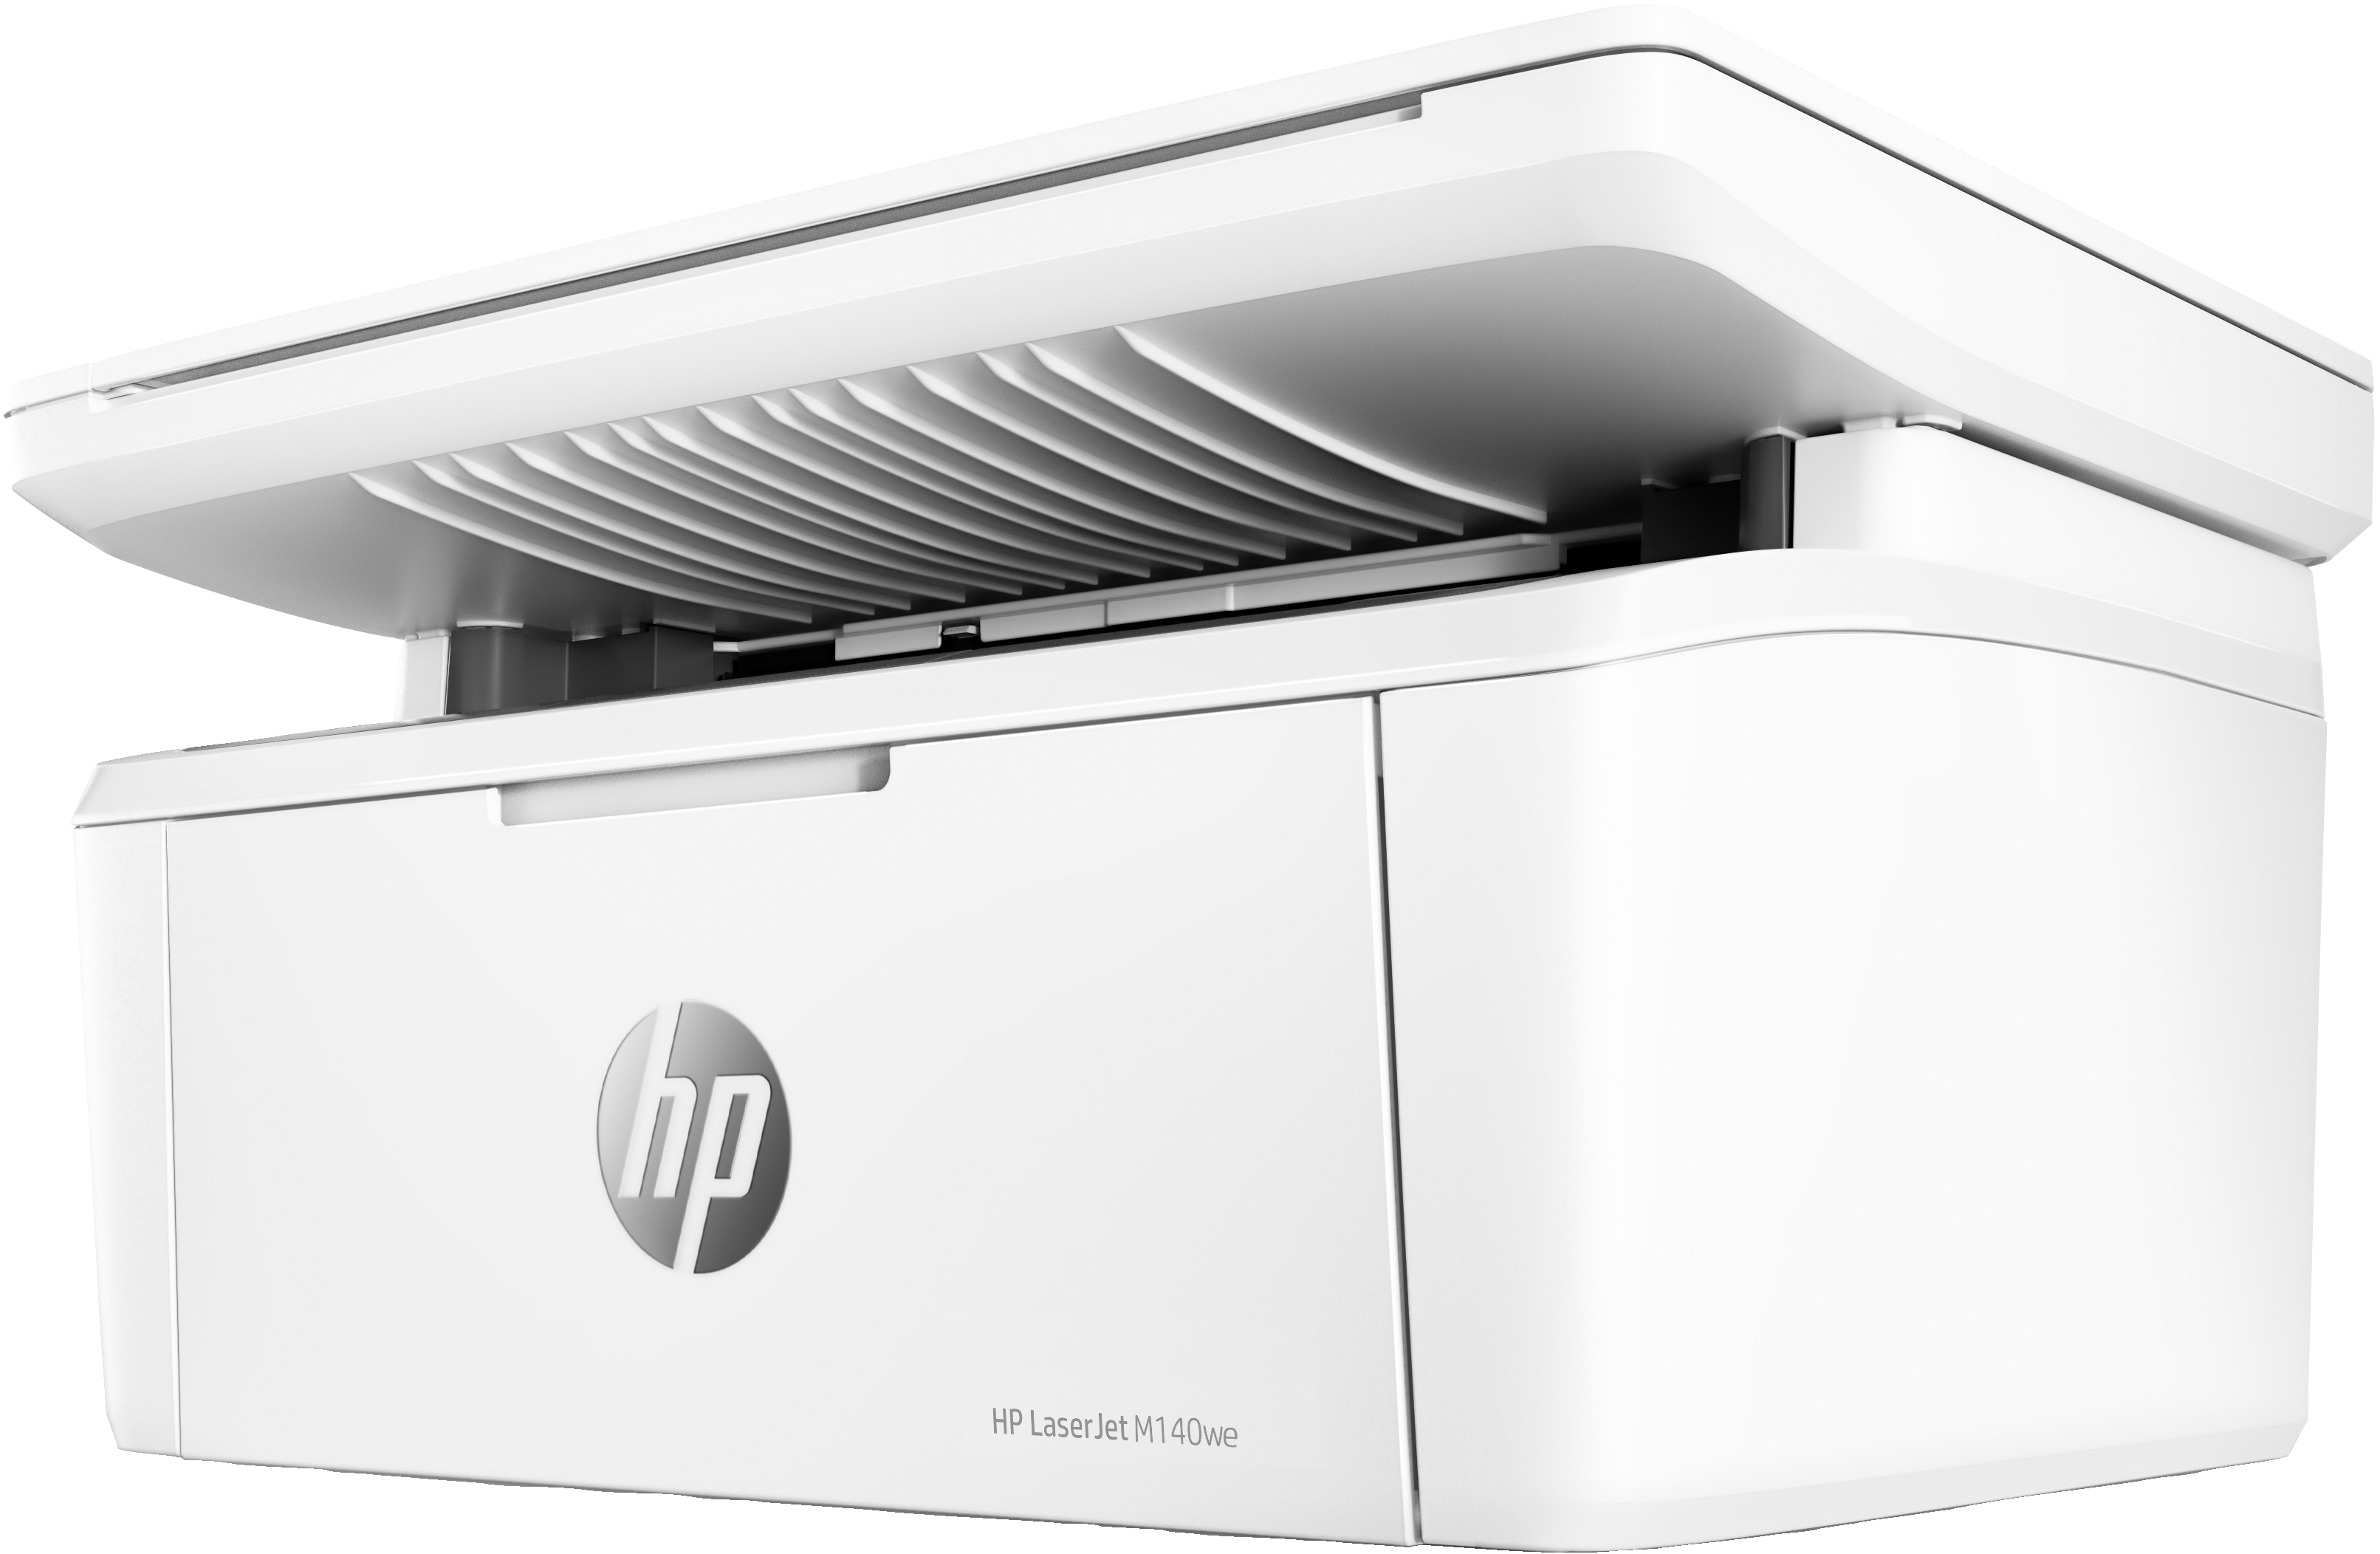 HP HP LaserJet MFP M140we printer, Zwart-wit, Printer voor Kleine kantoren, Printen, kopi&#235;ren, scannen, Draadloos; HP+; Geschikt voor HP Instant Ink; Scan naar e-mail